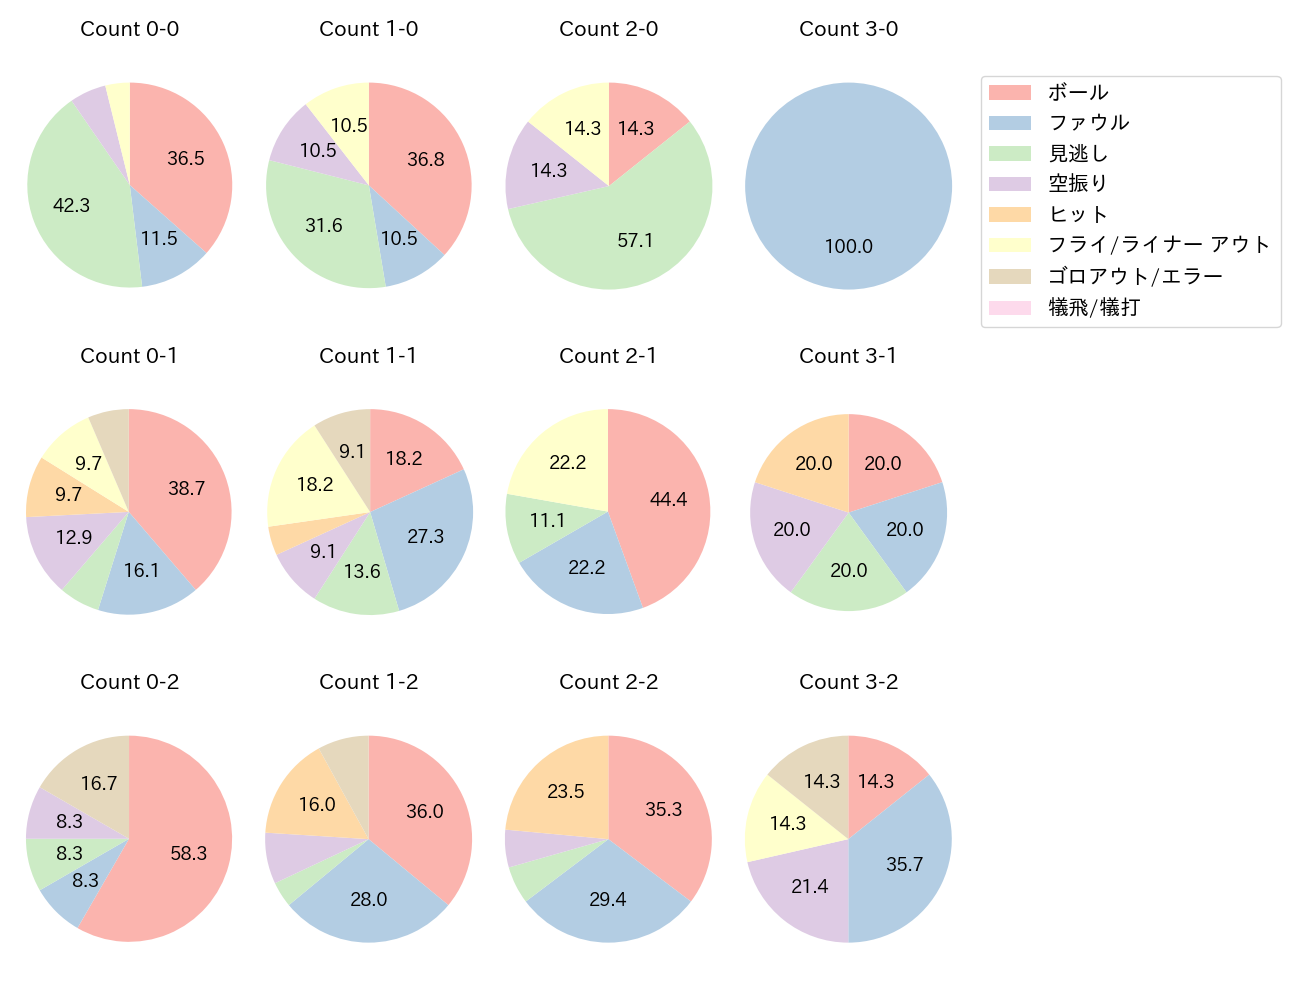 長野 久義の球数分布(2022年7月)